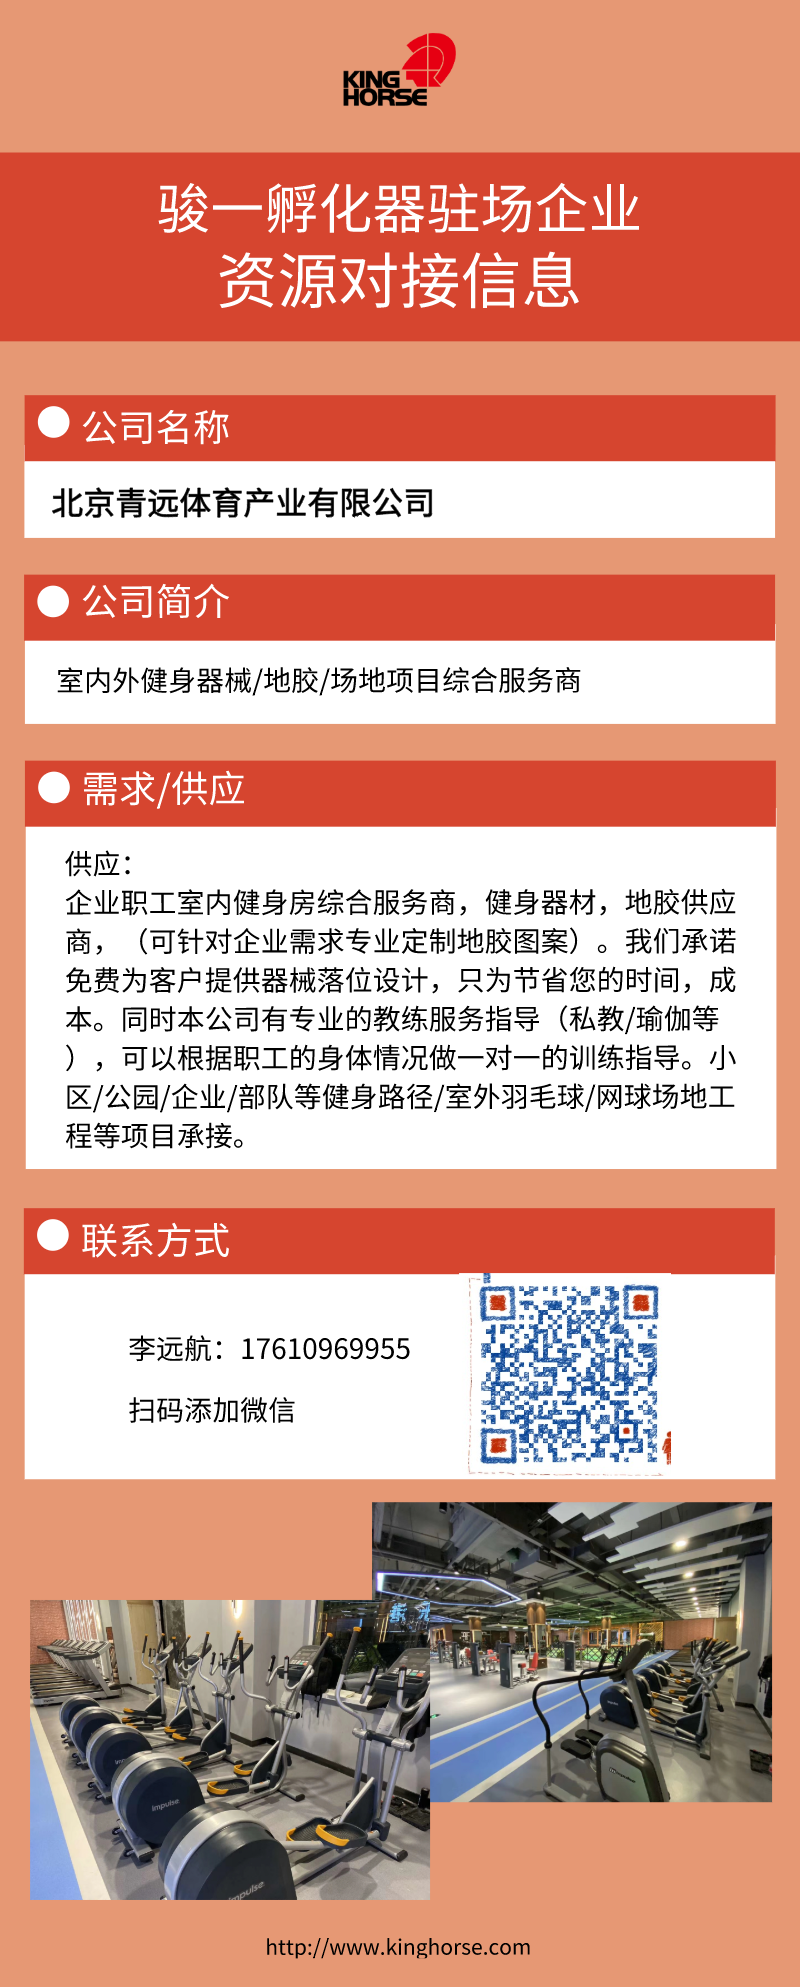 北京青远体育产业有限公司.png